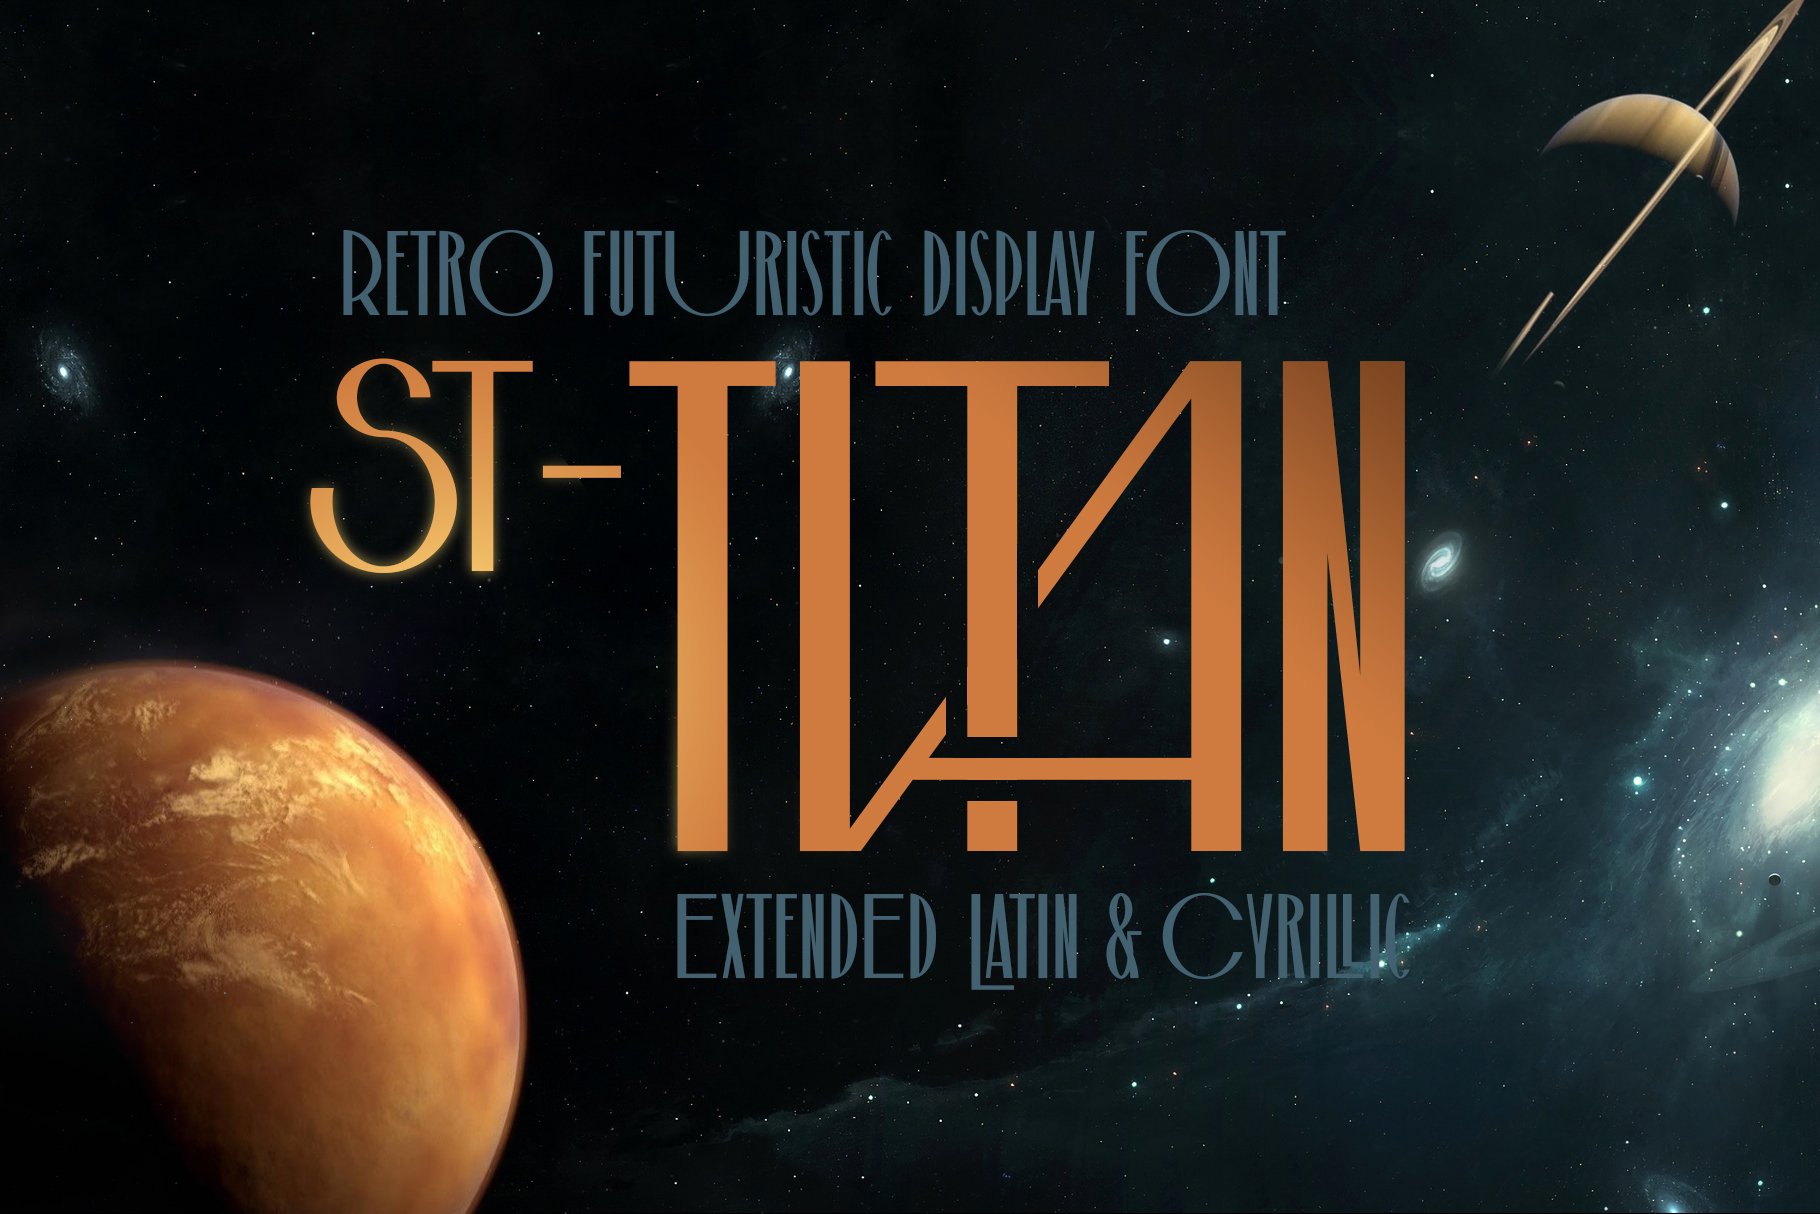 ST-Titan retro futuristic font cover image.